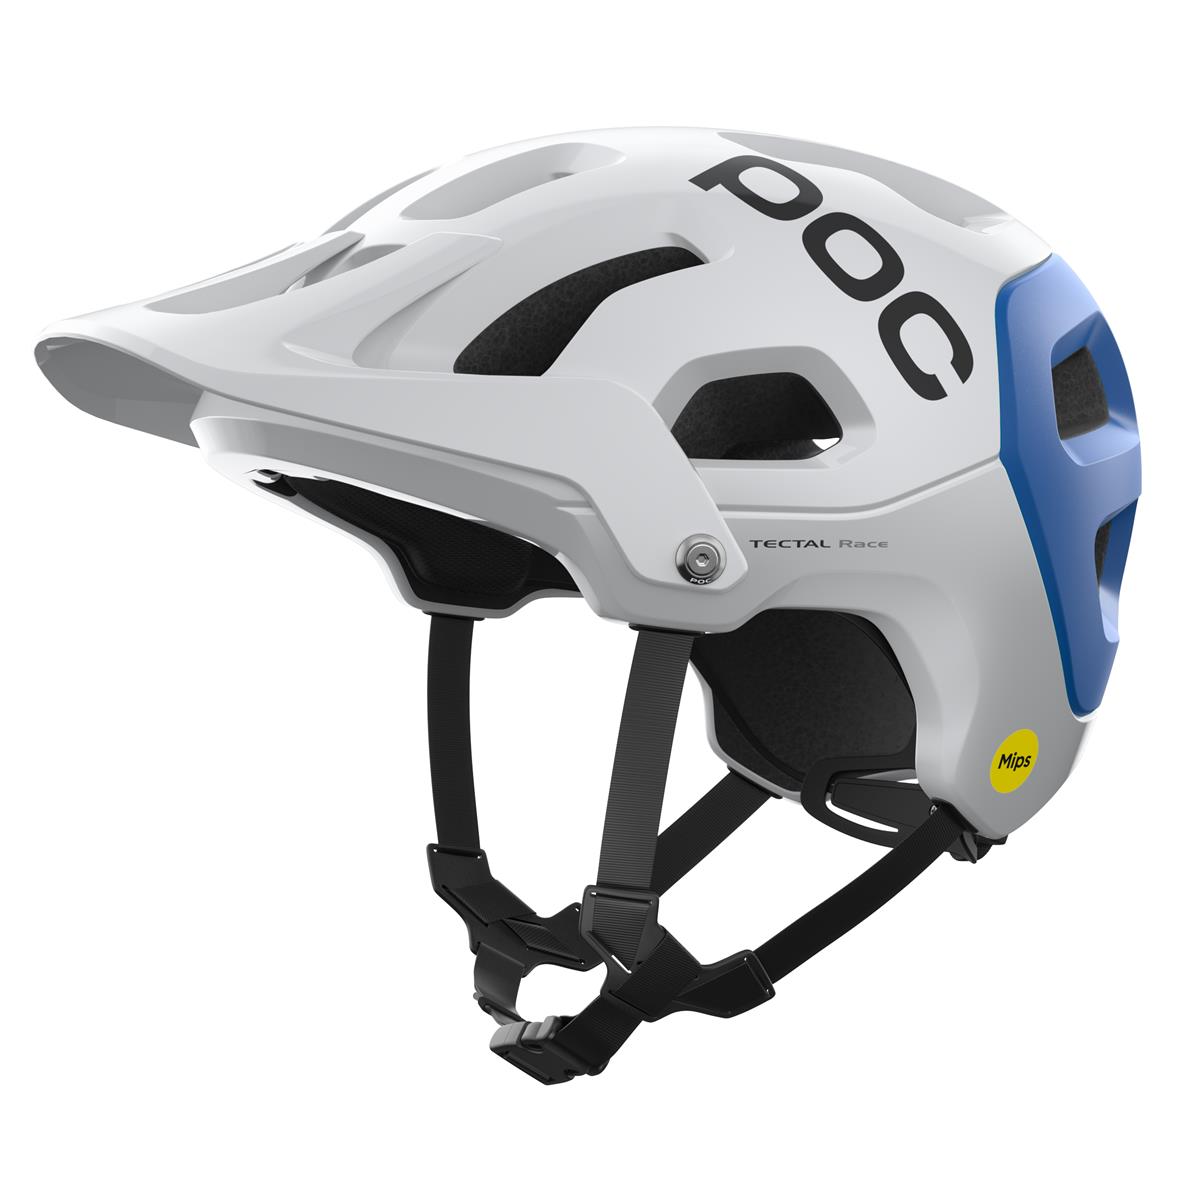 Helmet Tectal Race MIPS Hydrogen White/Opal Blue size S (51-54cm)